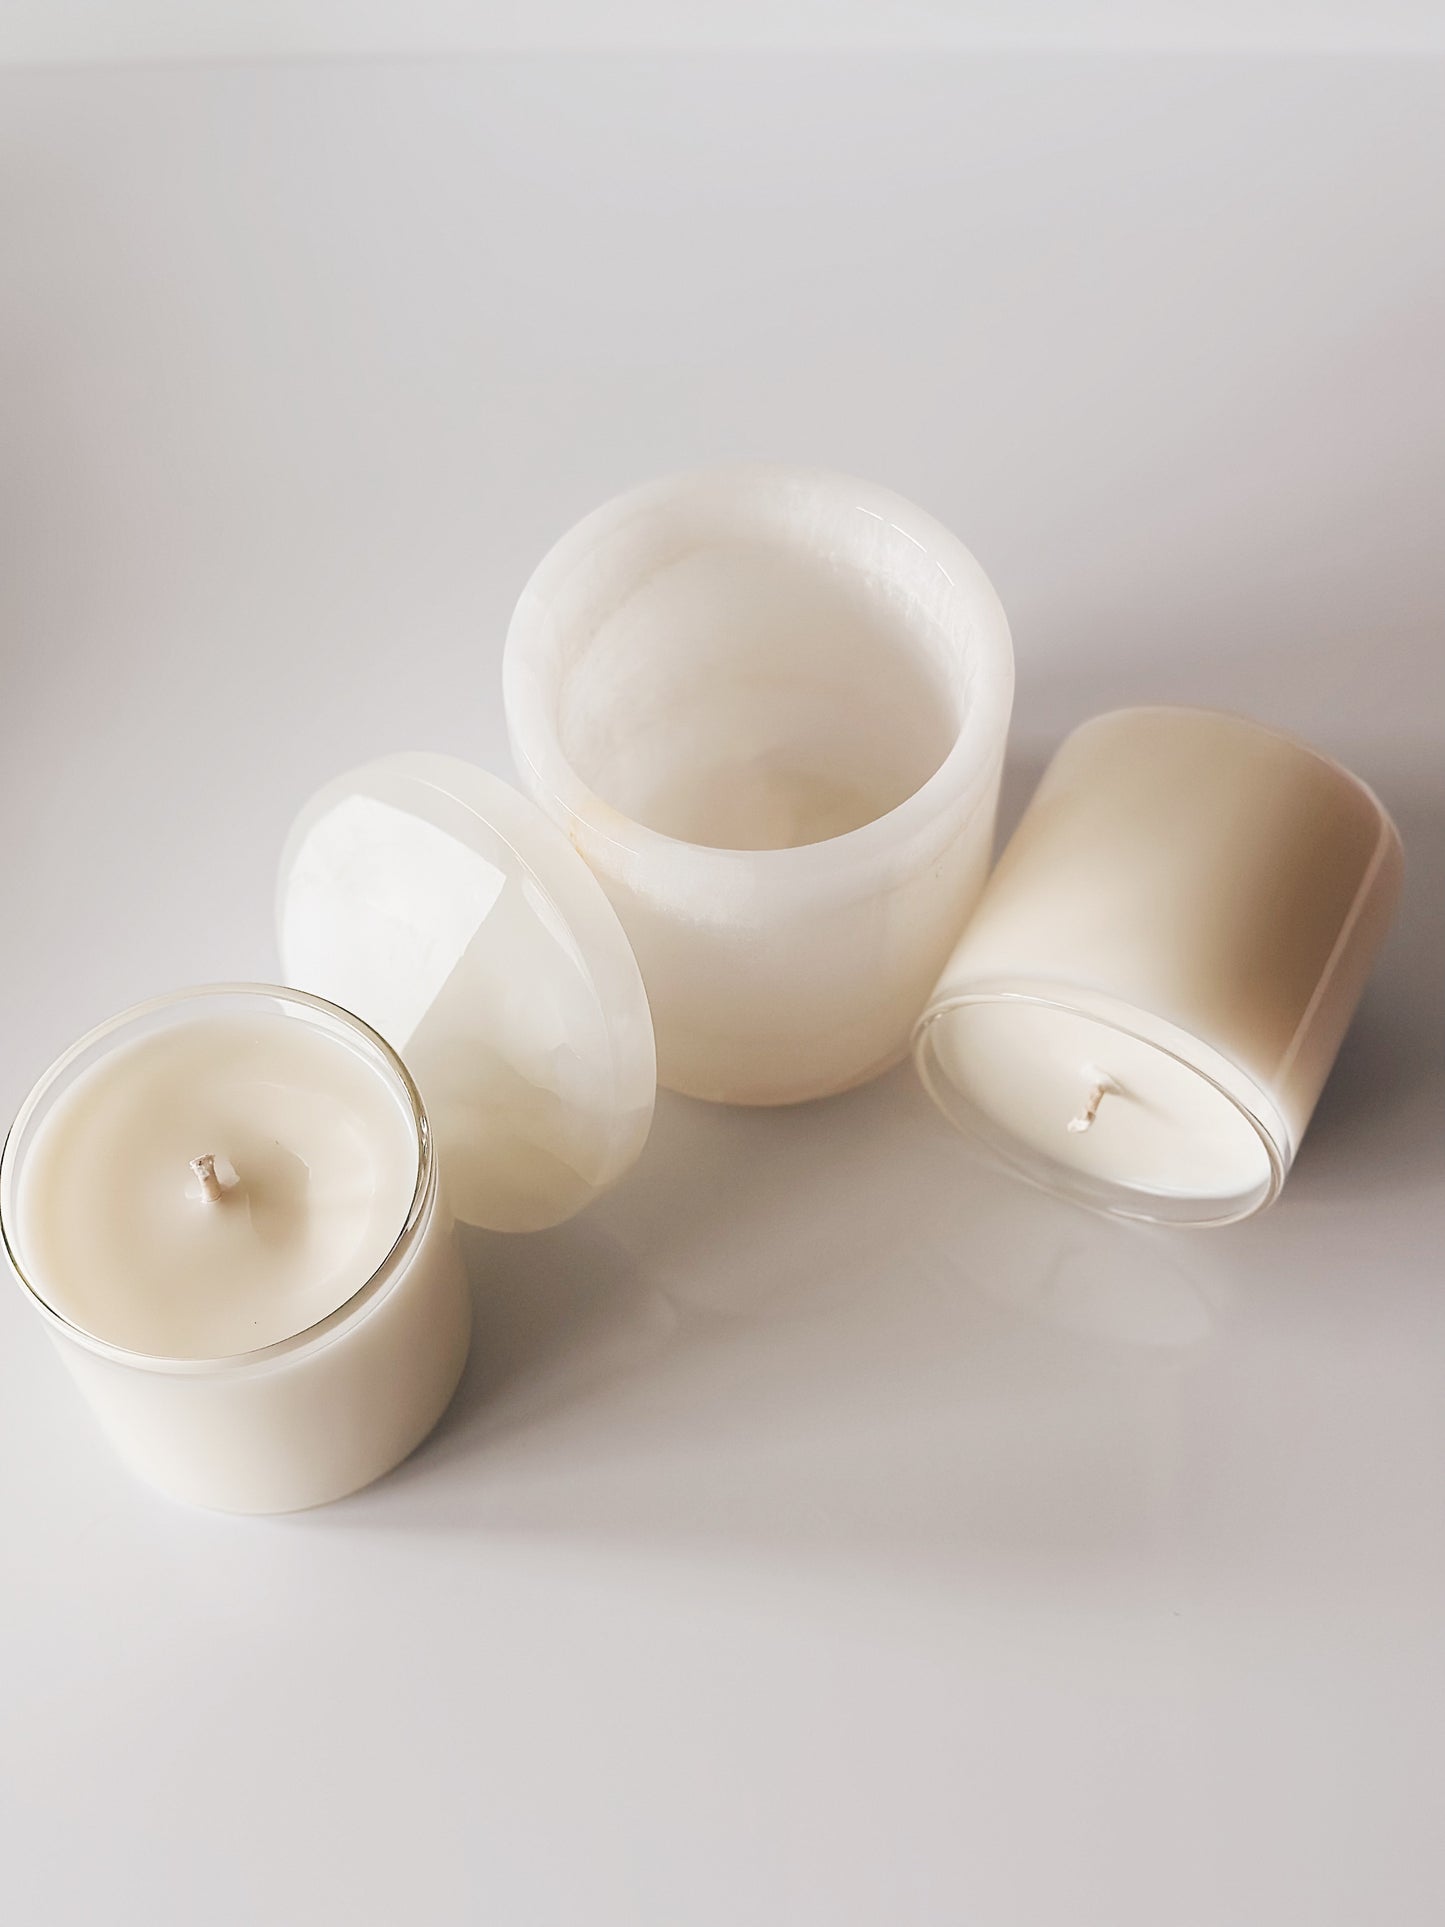 en mer LTD | refillable onyx set | limited batch soy wax candle set